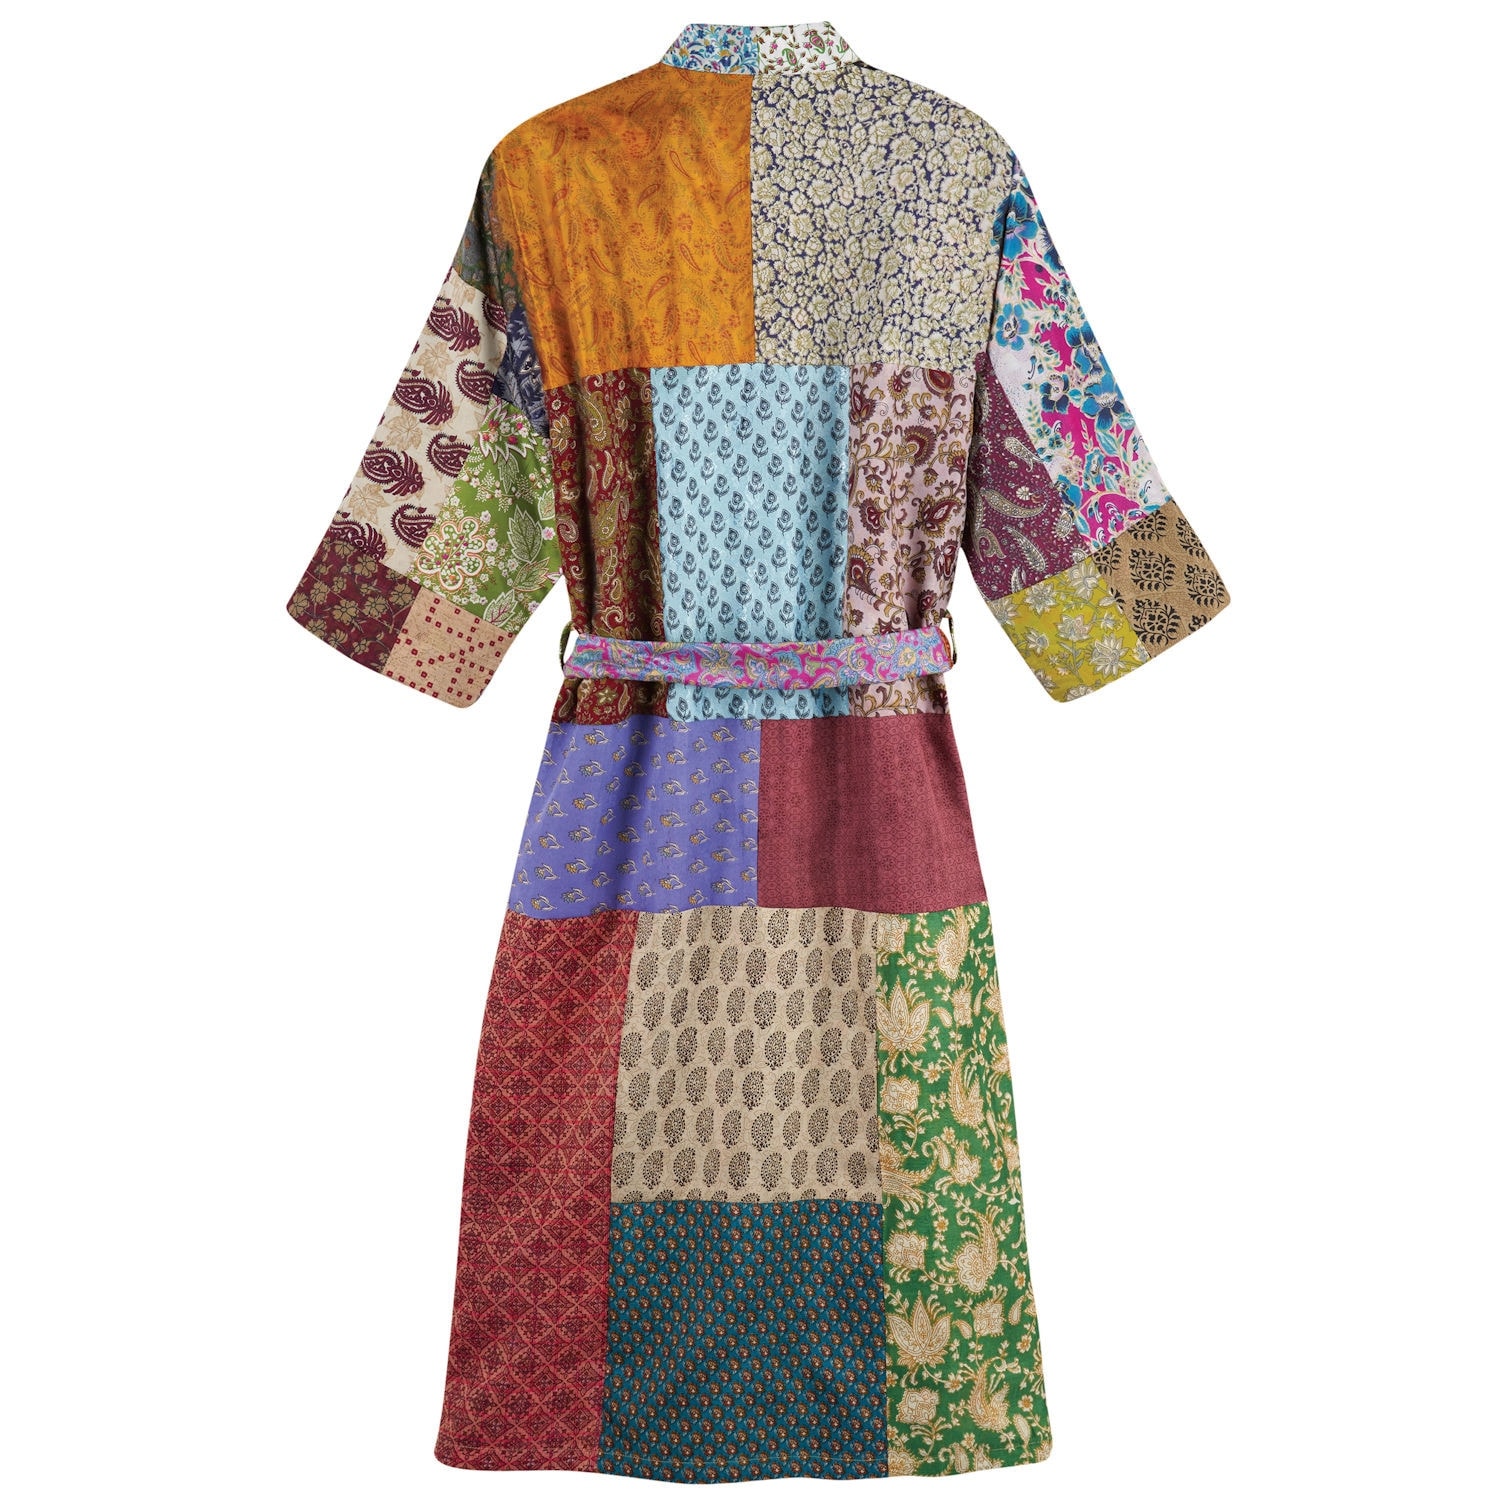 oriental robe bohemian women/'s clothing bridal kimono dress swimming dress #TMK 161 recycled kimono art silk sari fabric kimono jacket